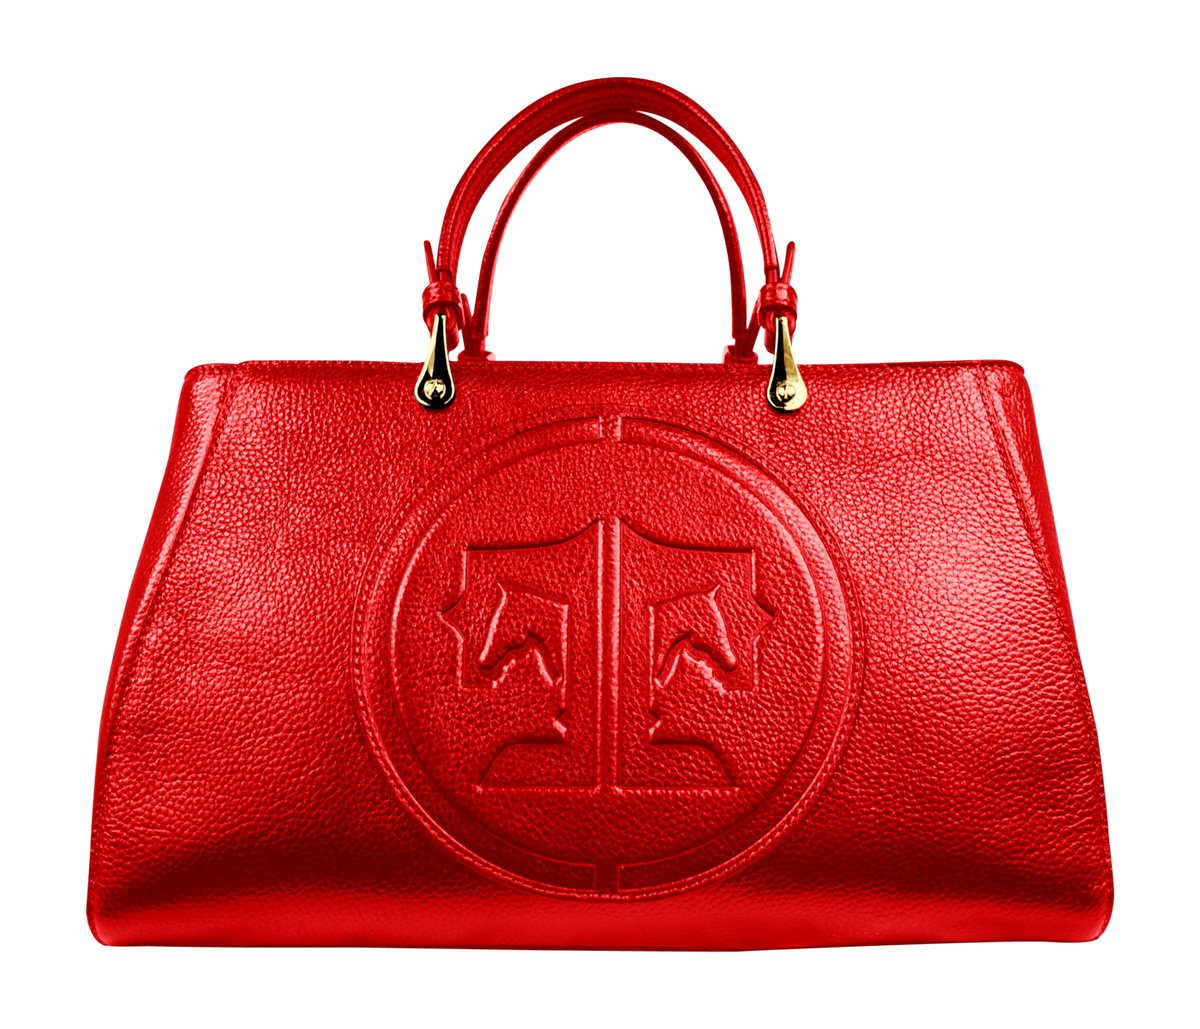 Tucker Tweed Leather Handbags Red / Signature Sedgefield Legacy: Signature